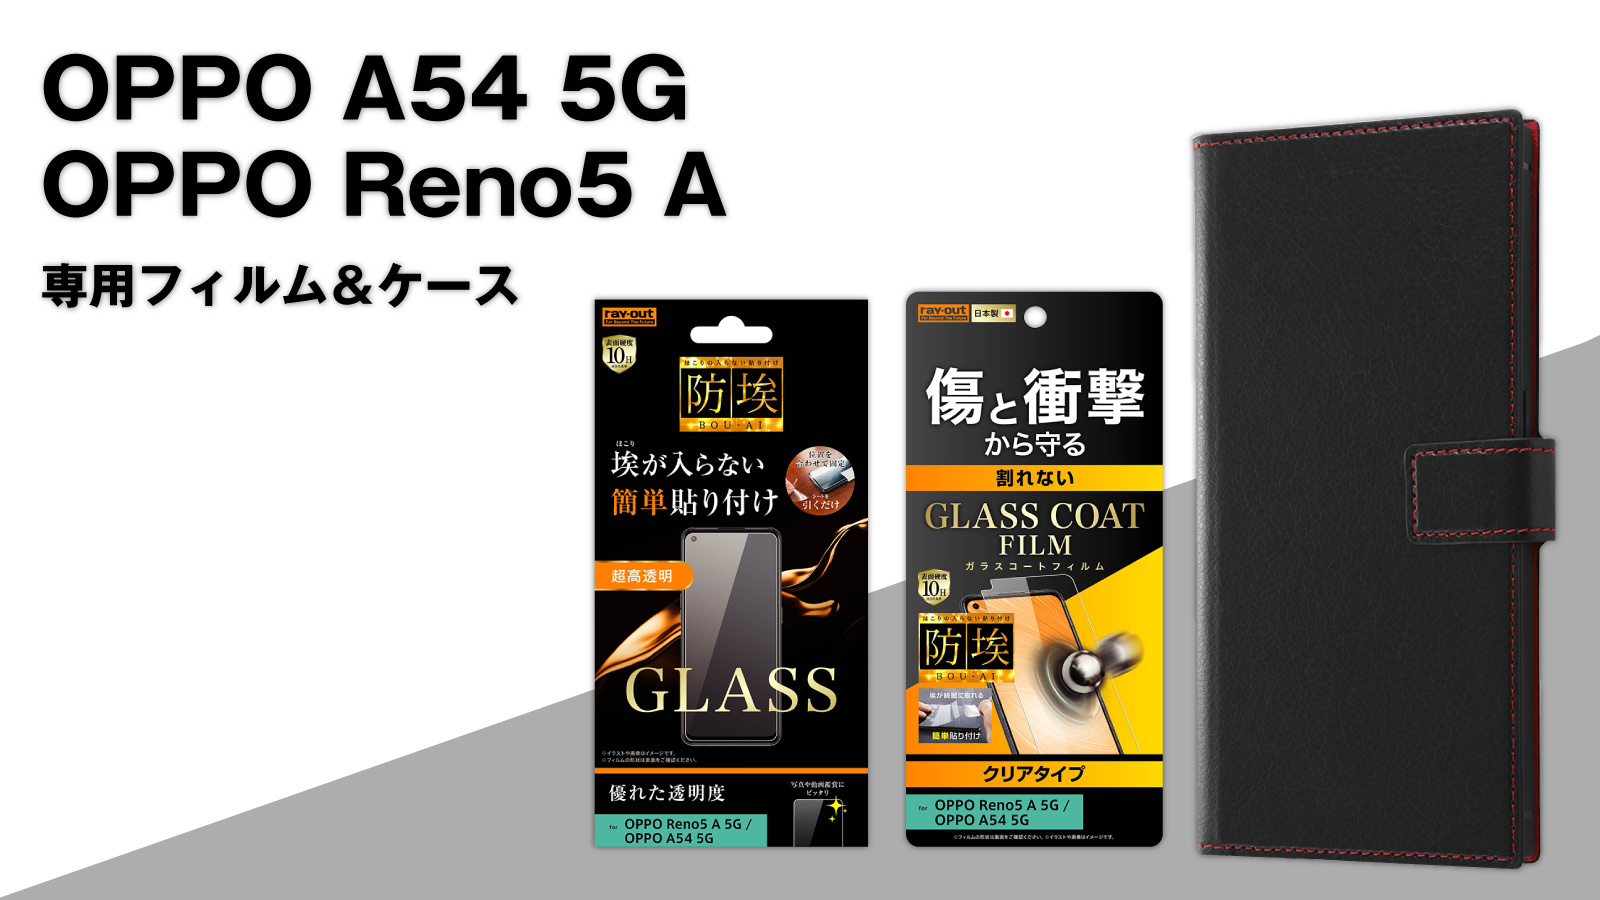 474円 人気の製品 OPPO Reno5 A フィルム 10H ガラスコート 衝撃吸収 高光沢 人気 おすすめ